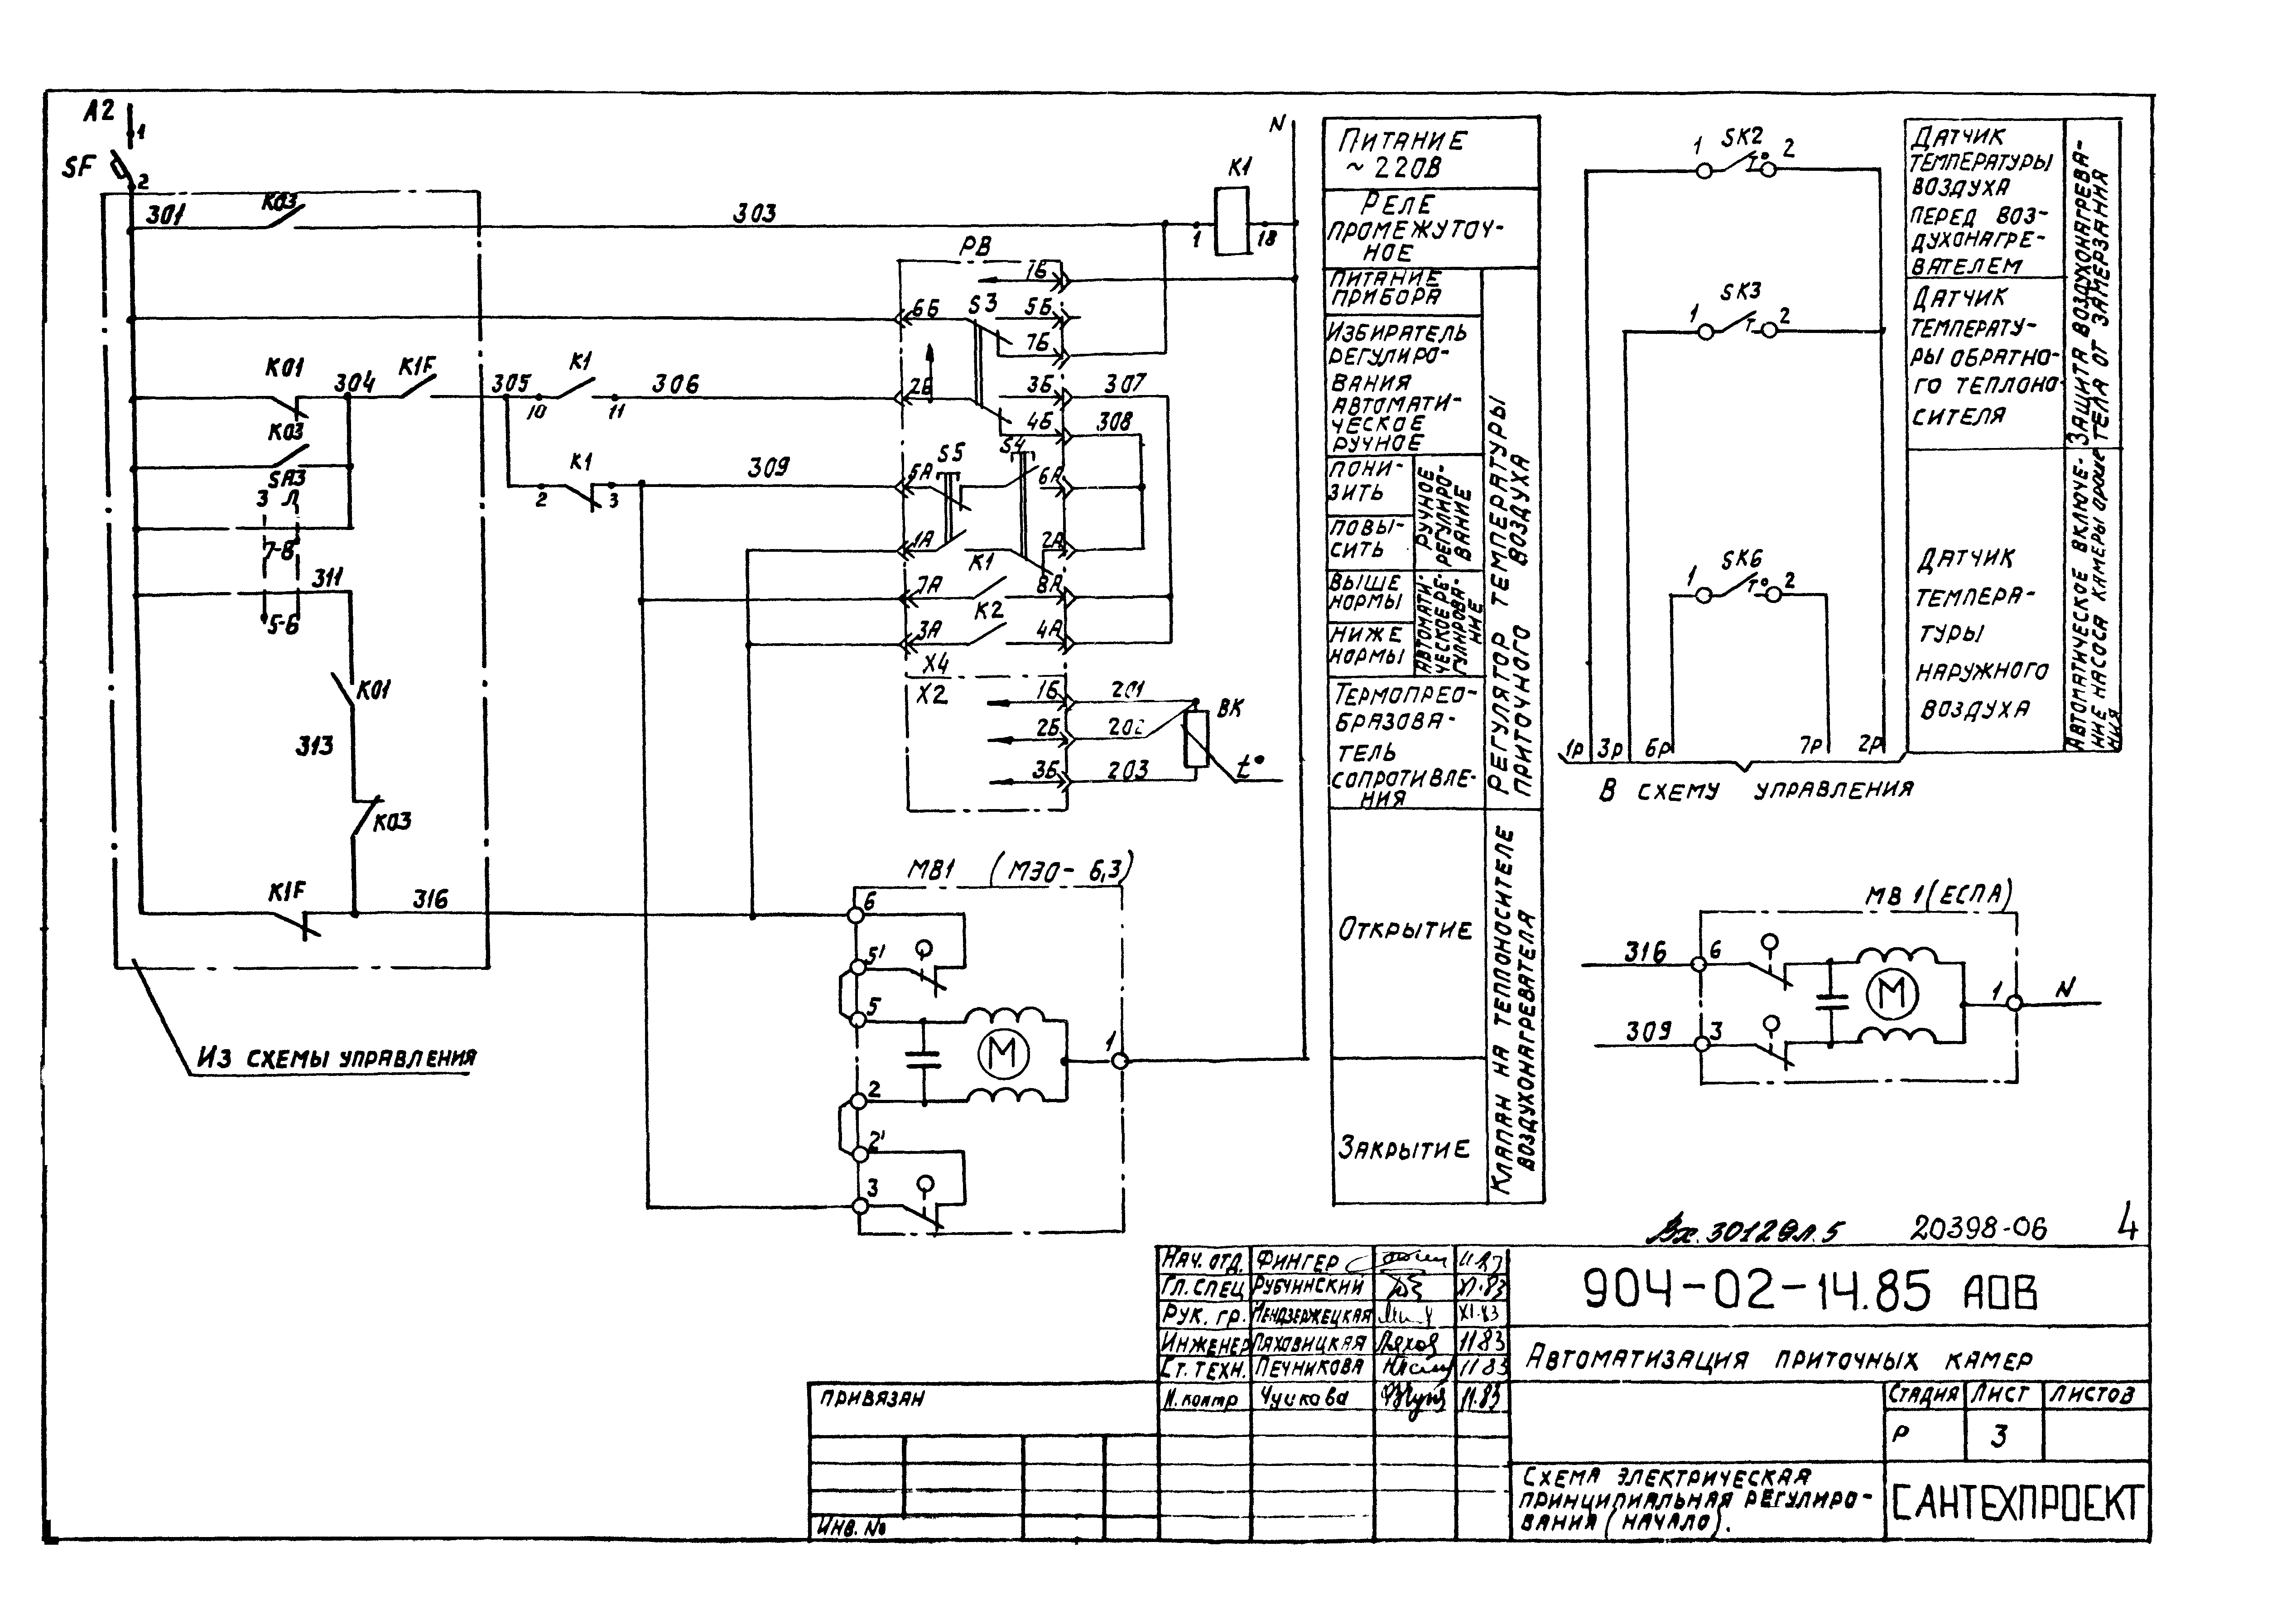 Электрическая схема системы вытяжной вентиляции печи пр-100г